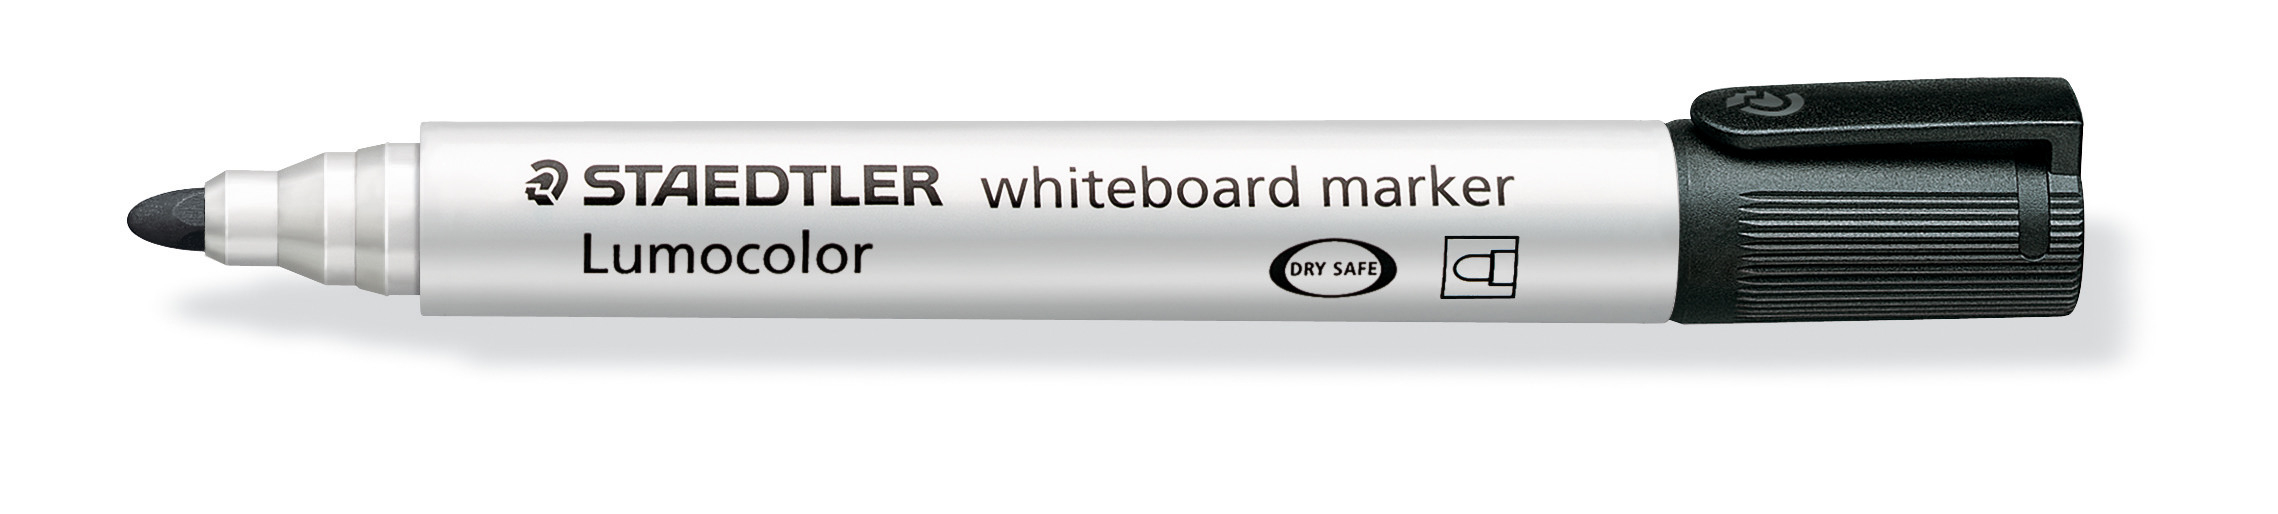 STAEDTLER Whiteboard Marker 2mm 351-9 schwarz